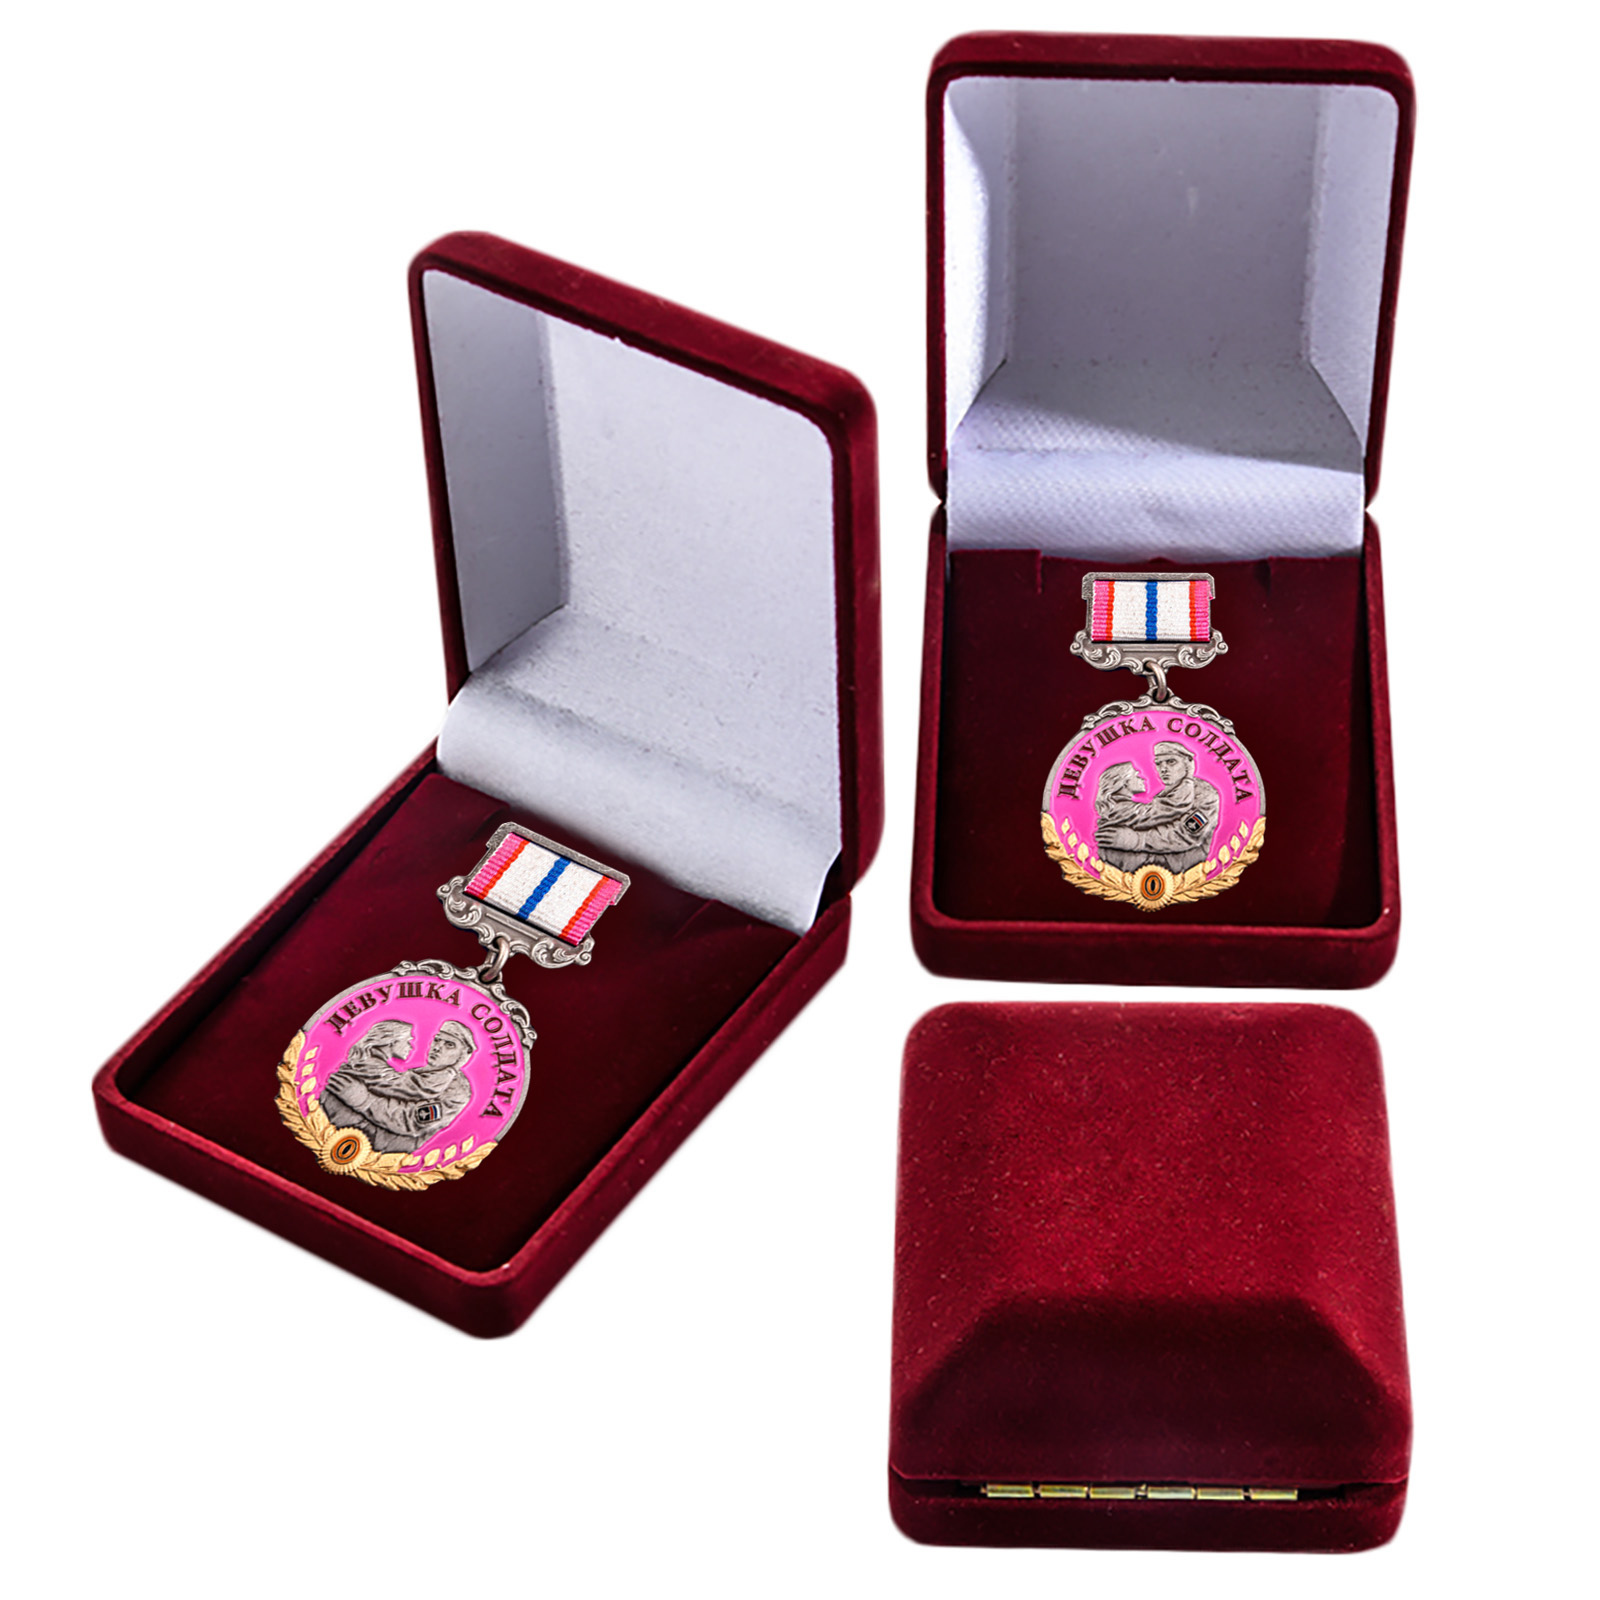 Купить латунную медаль За верность девушке солдата оптом или в розницу